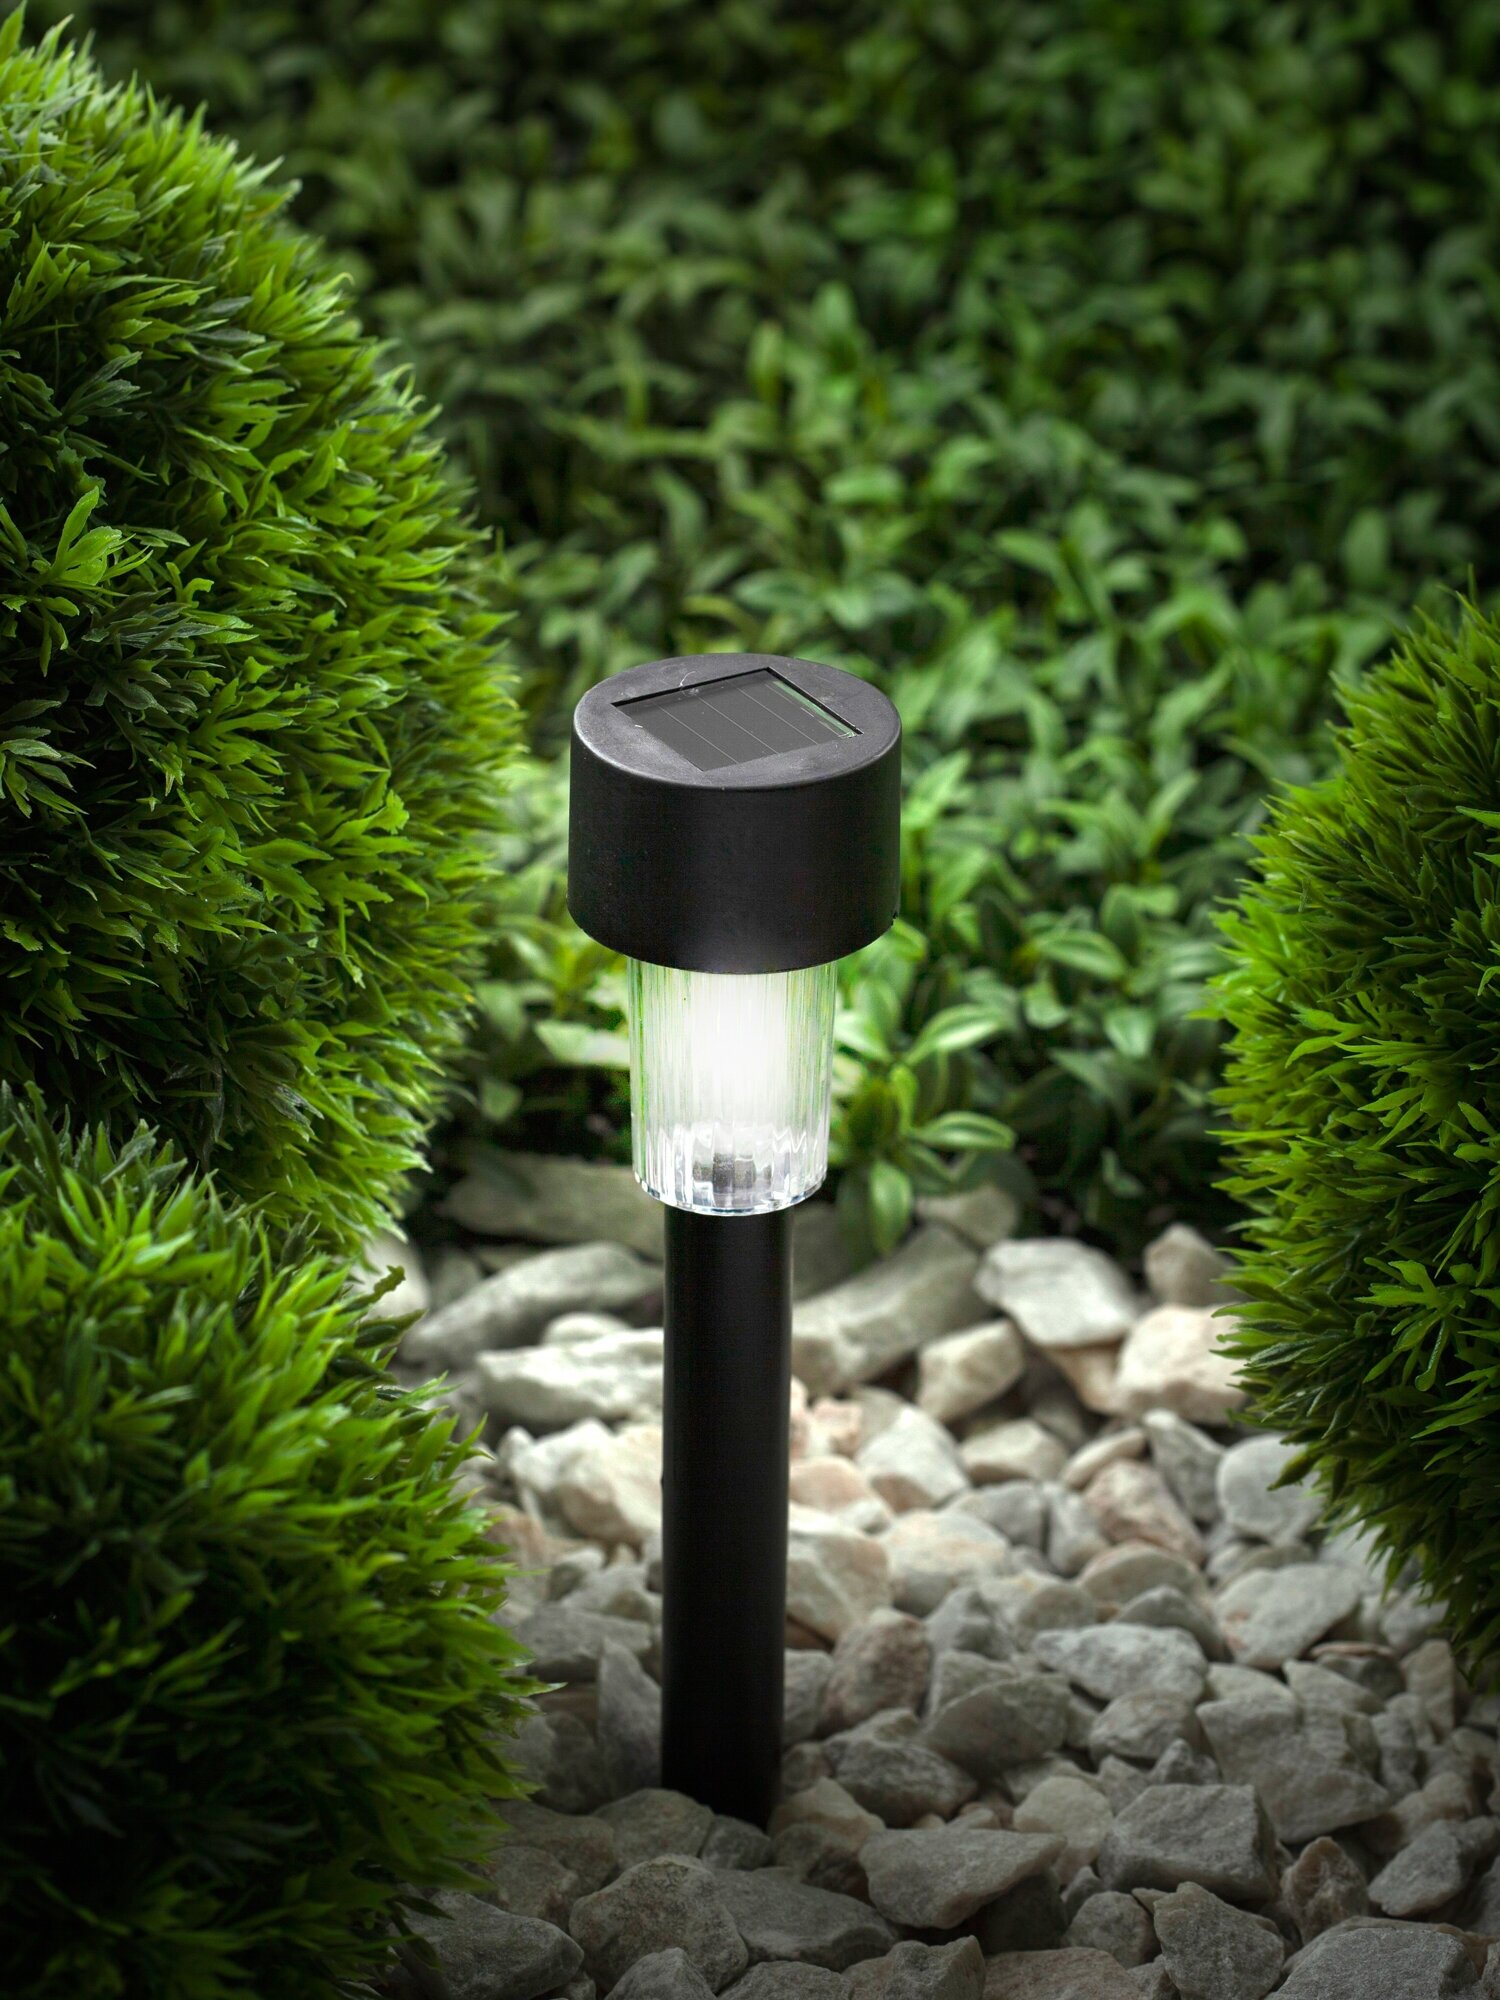 Садовый светильник ЭРА SL-PL30 на солнечной батарее, пластик, черный, 30 см арт. Б0018974 (24 шт.)